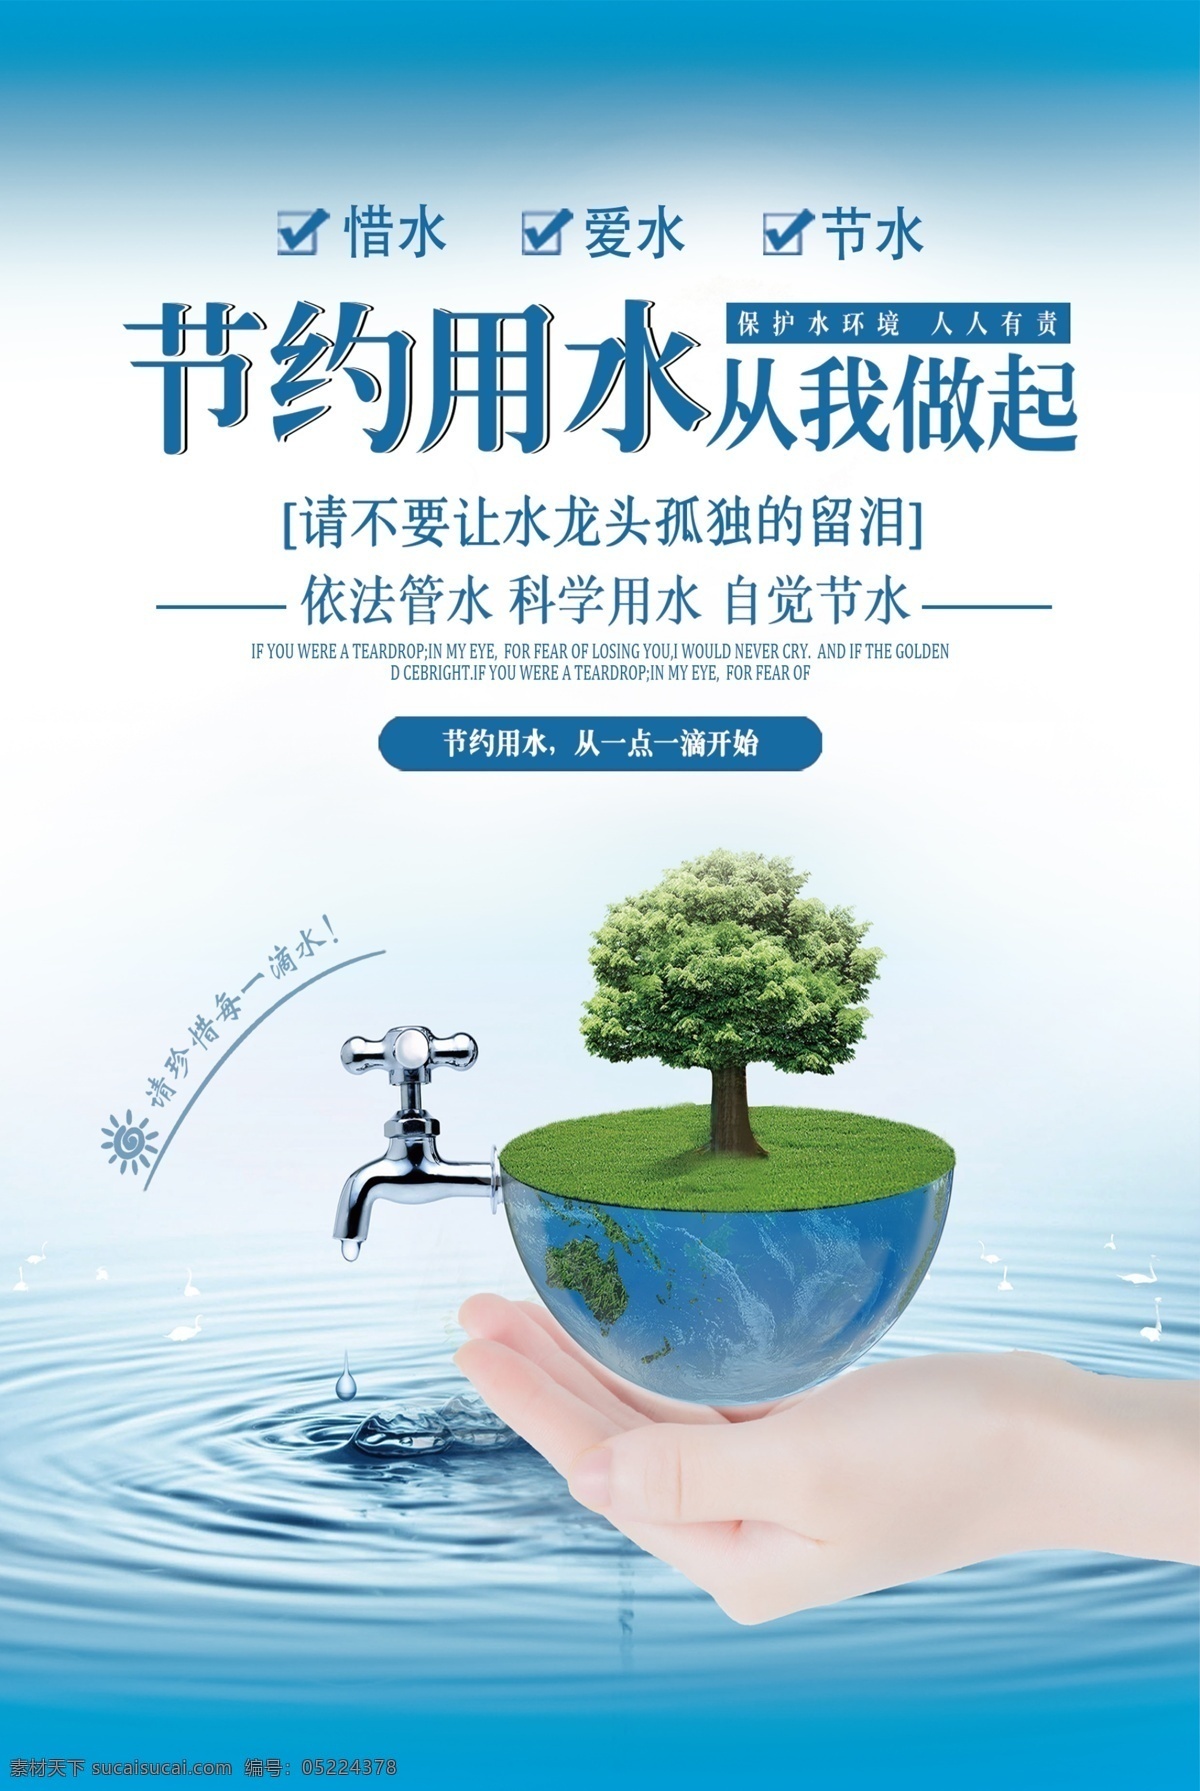 节约用水 保护环境 环保 节能 保护水资源